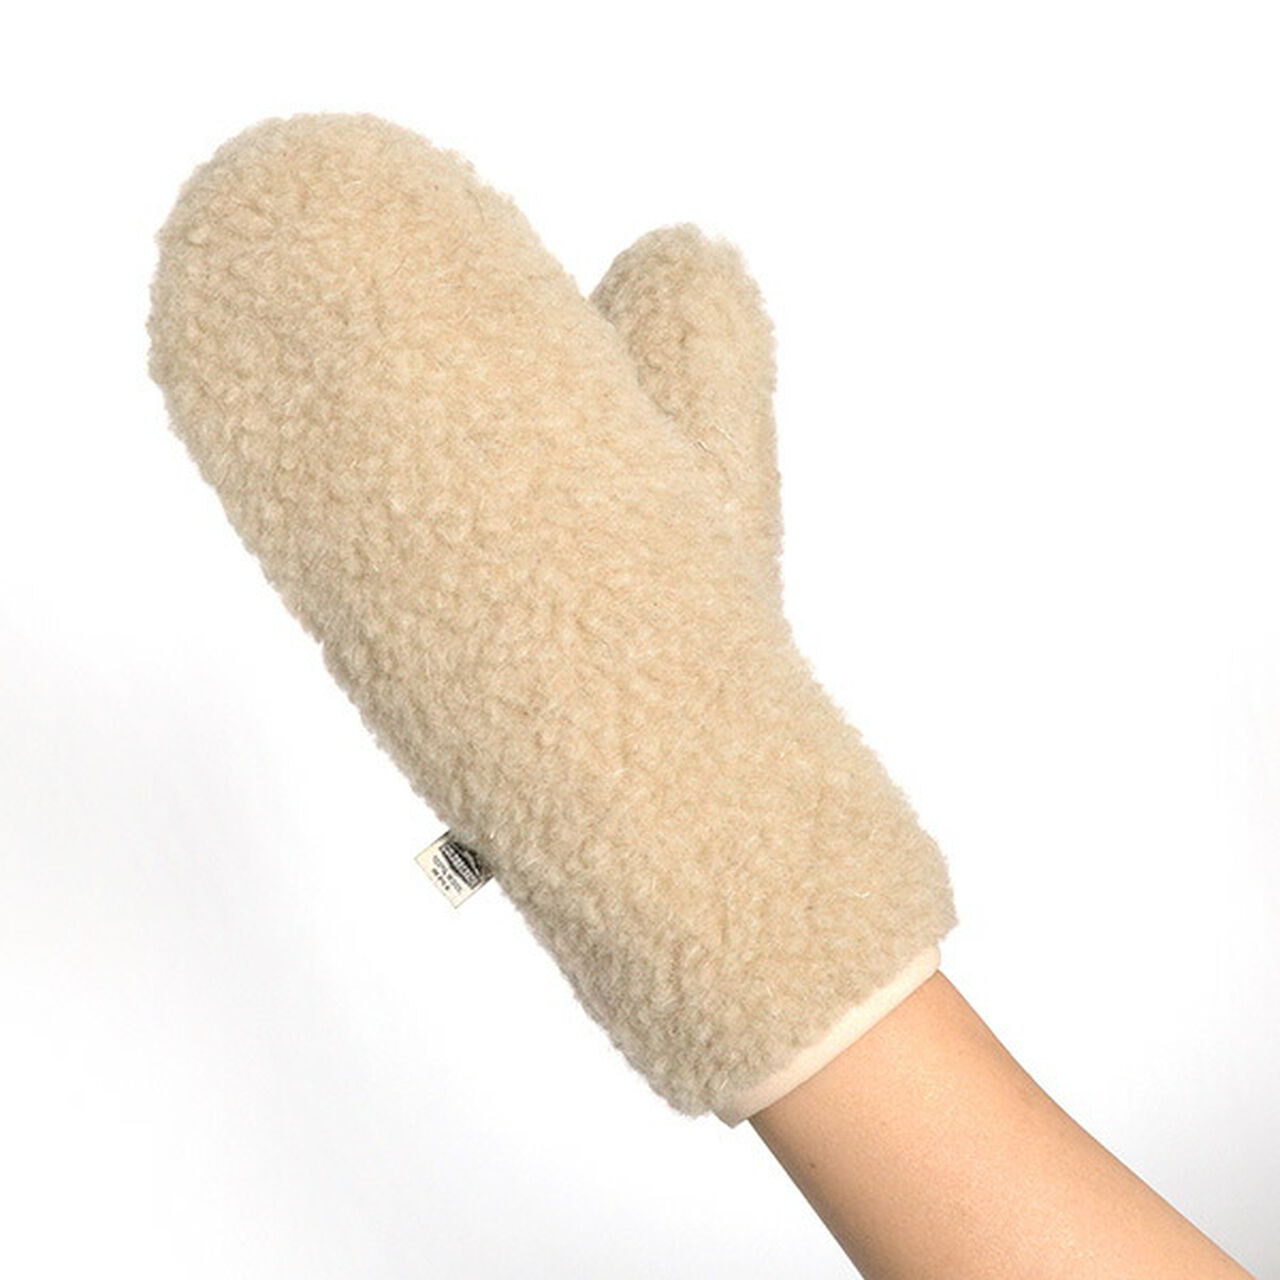 Boa Wool Gloves,Beige, large image number 0